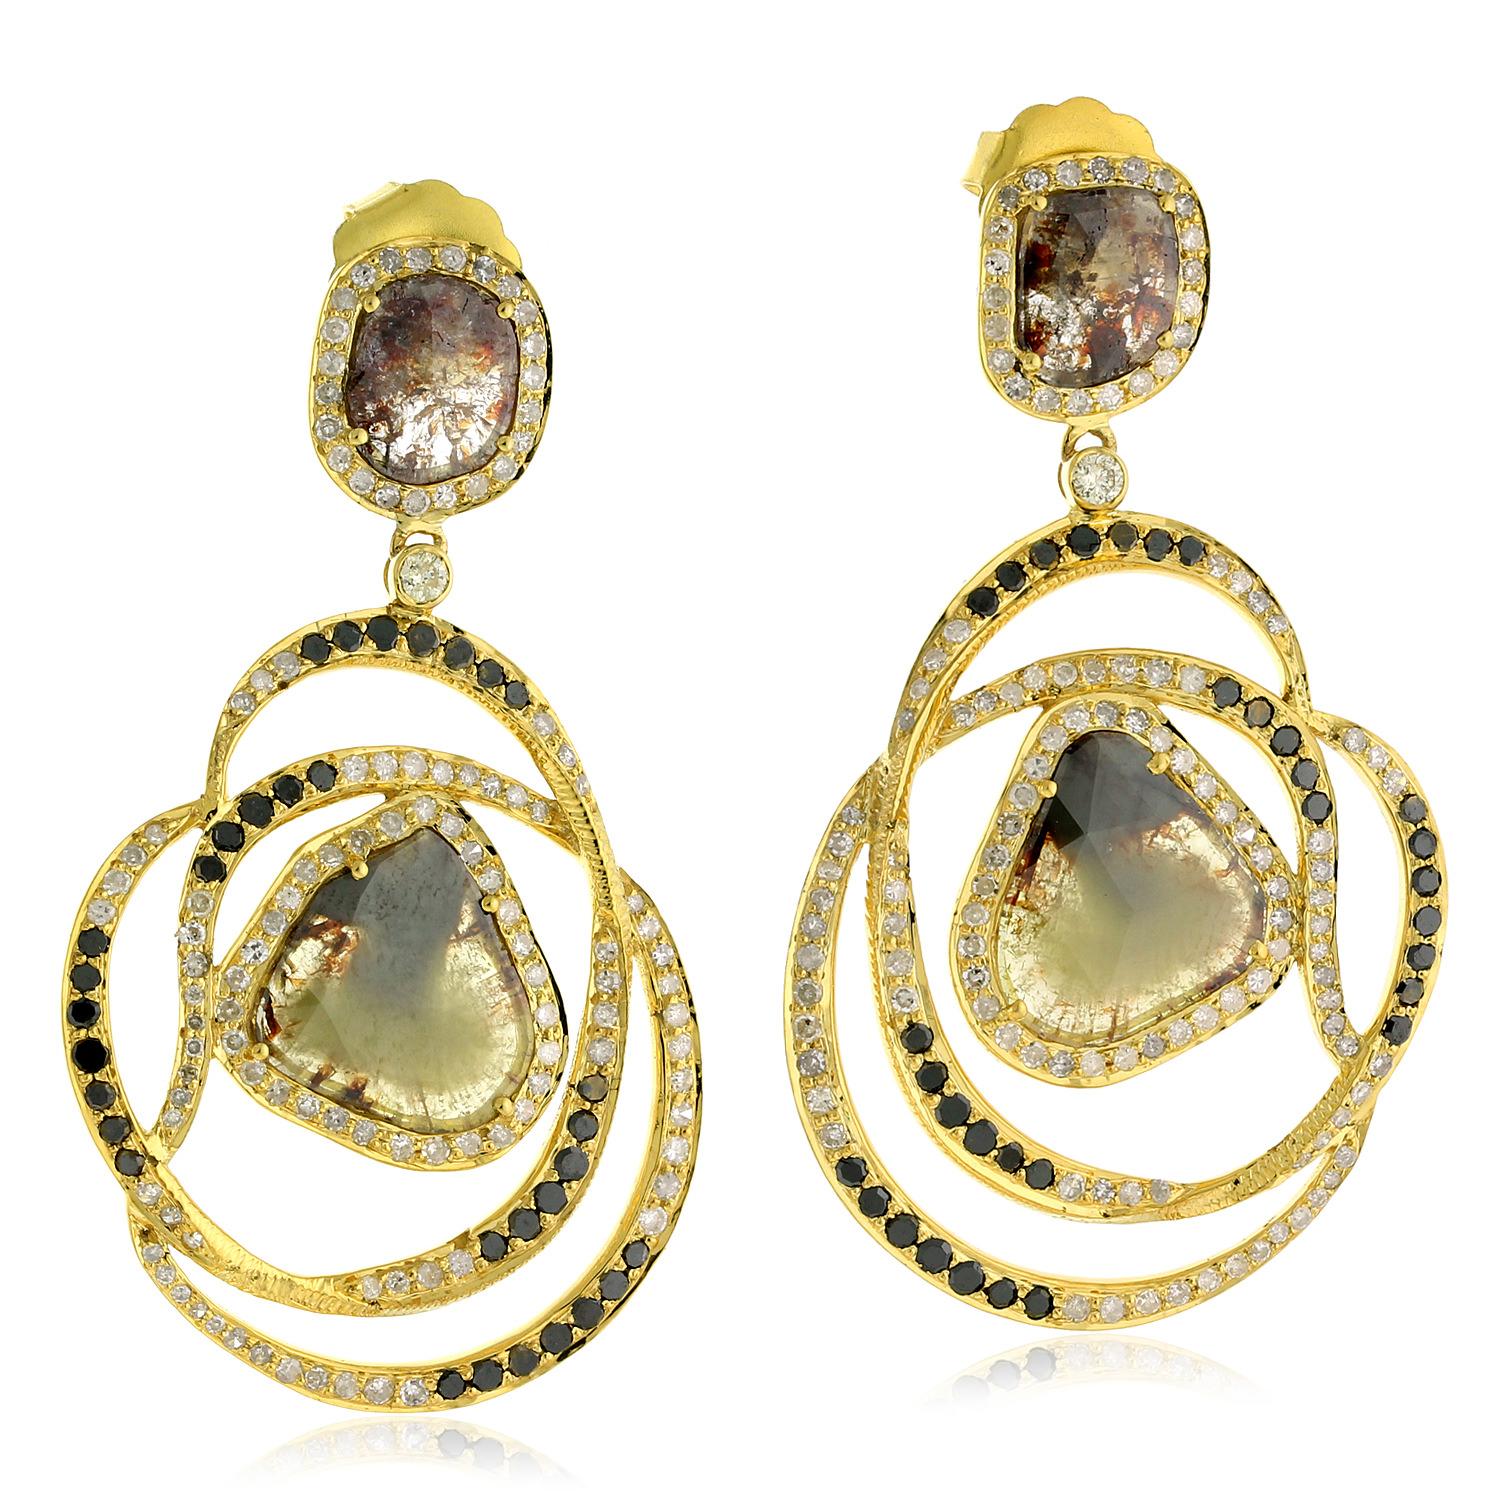 Uncut Fancy Slice Diamond 18 Karat Gold Swirl Earrings For Sale